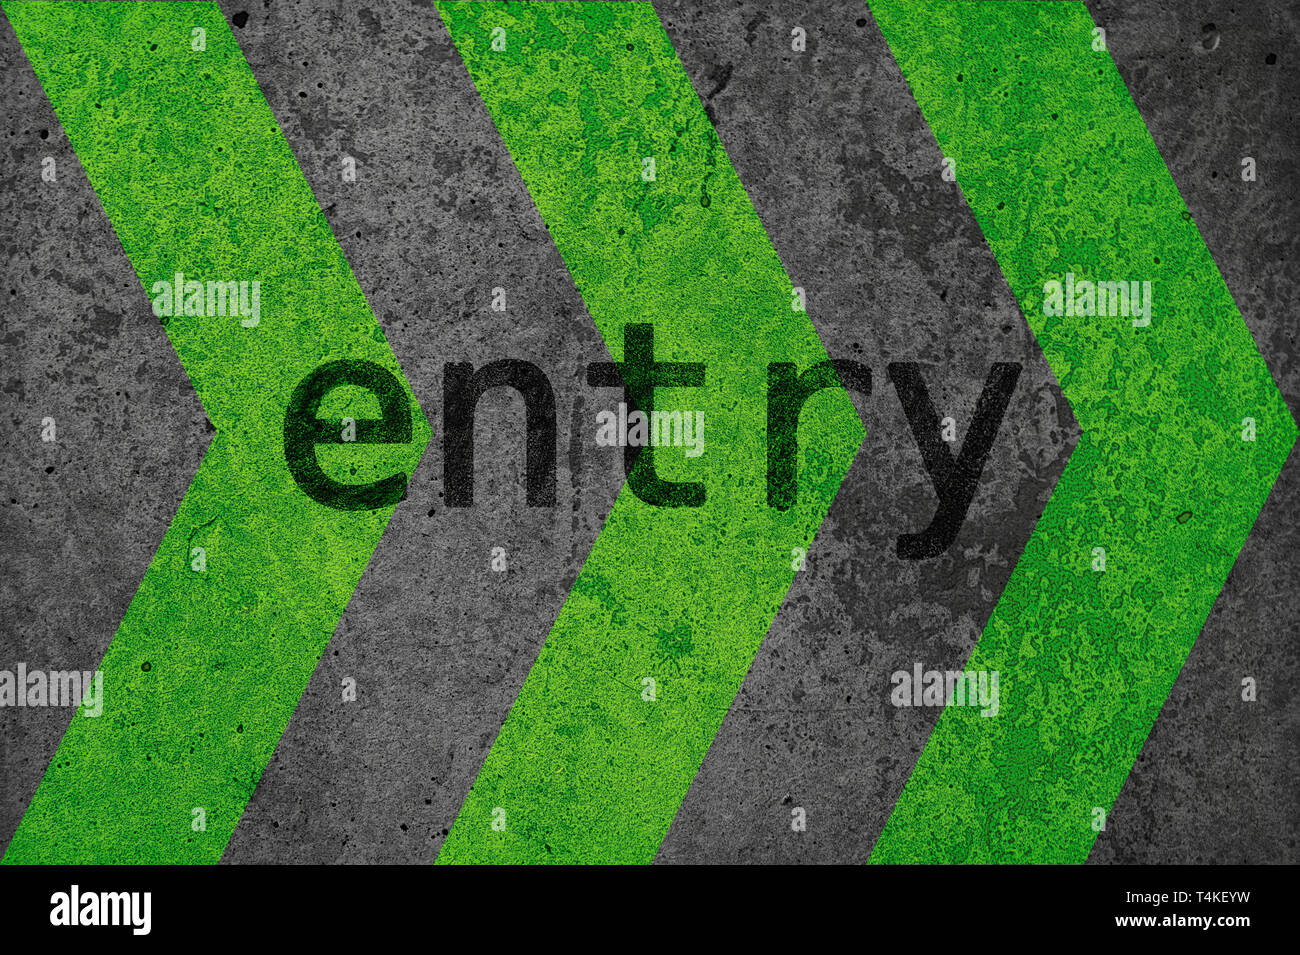 Un mur de béton a flèches vertes appliquées. Texte anglais : entrée. Idéal comme arrière-plan sur le thème de l'industrie, punk, rock, street ou qu'un sens s Banque D'Images